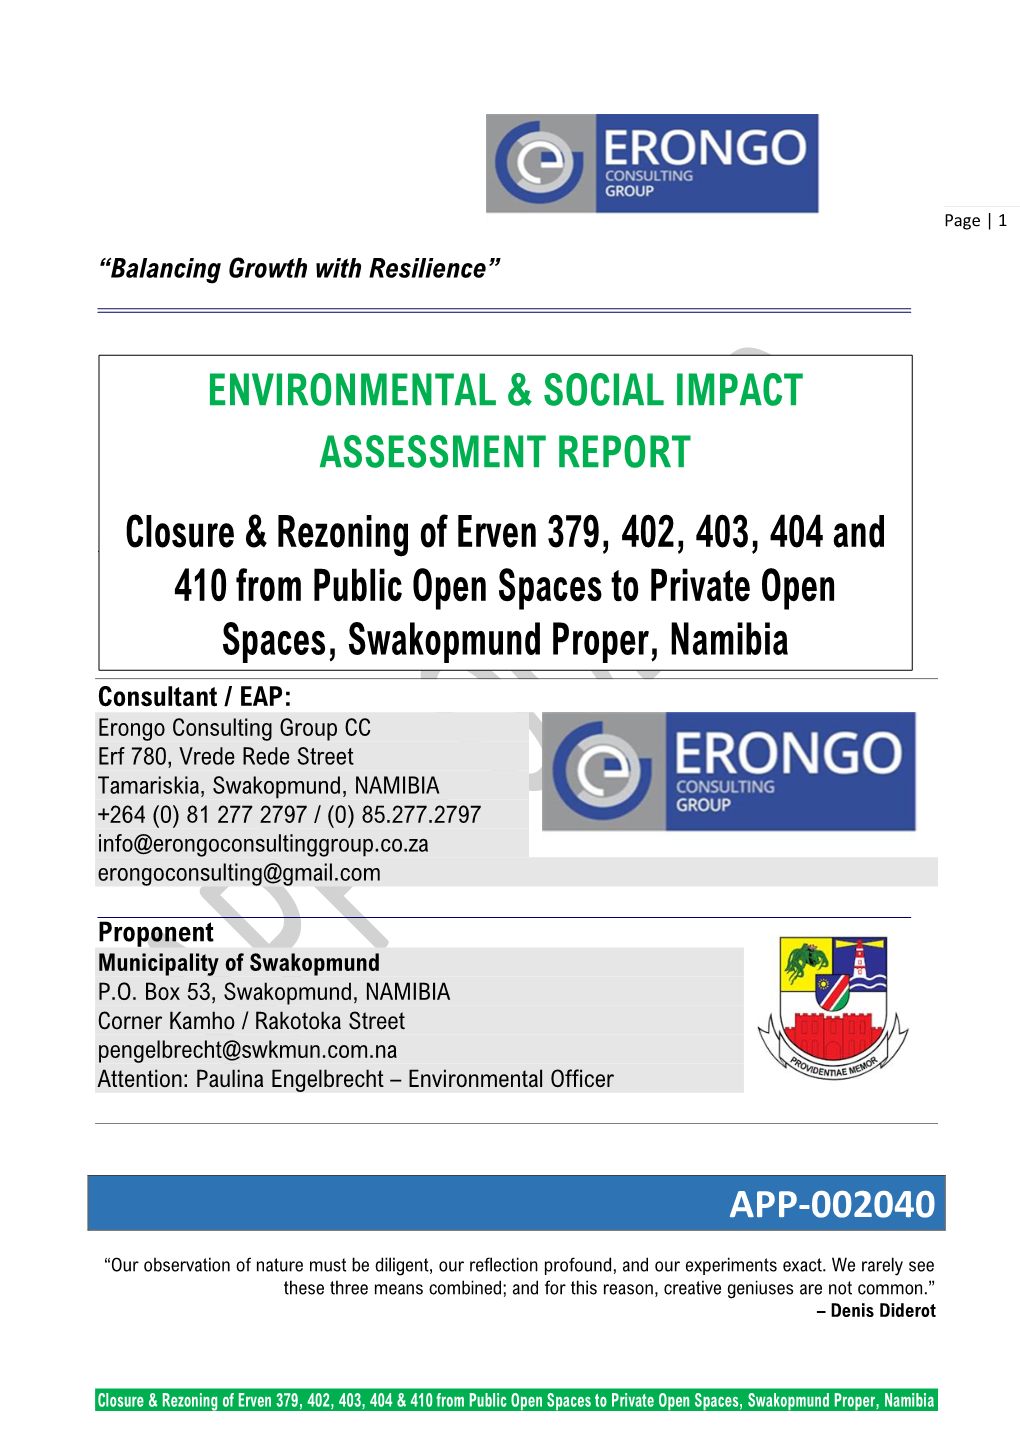 Environmental & Social Impact Assessment Report